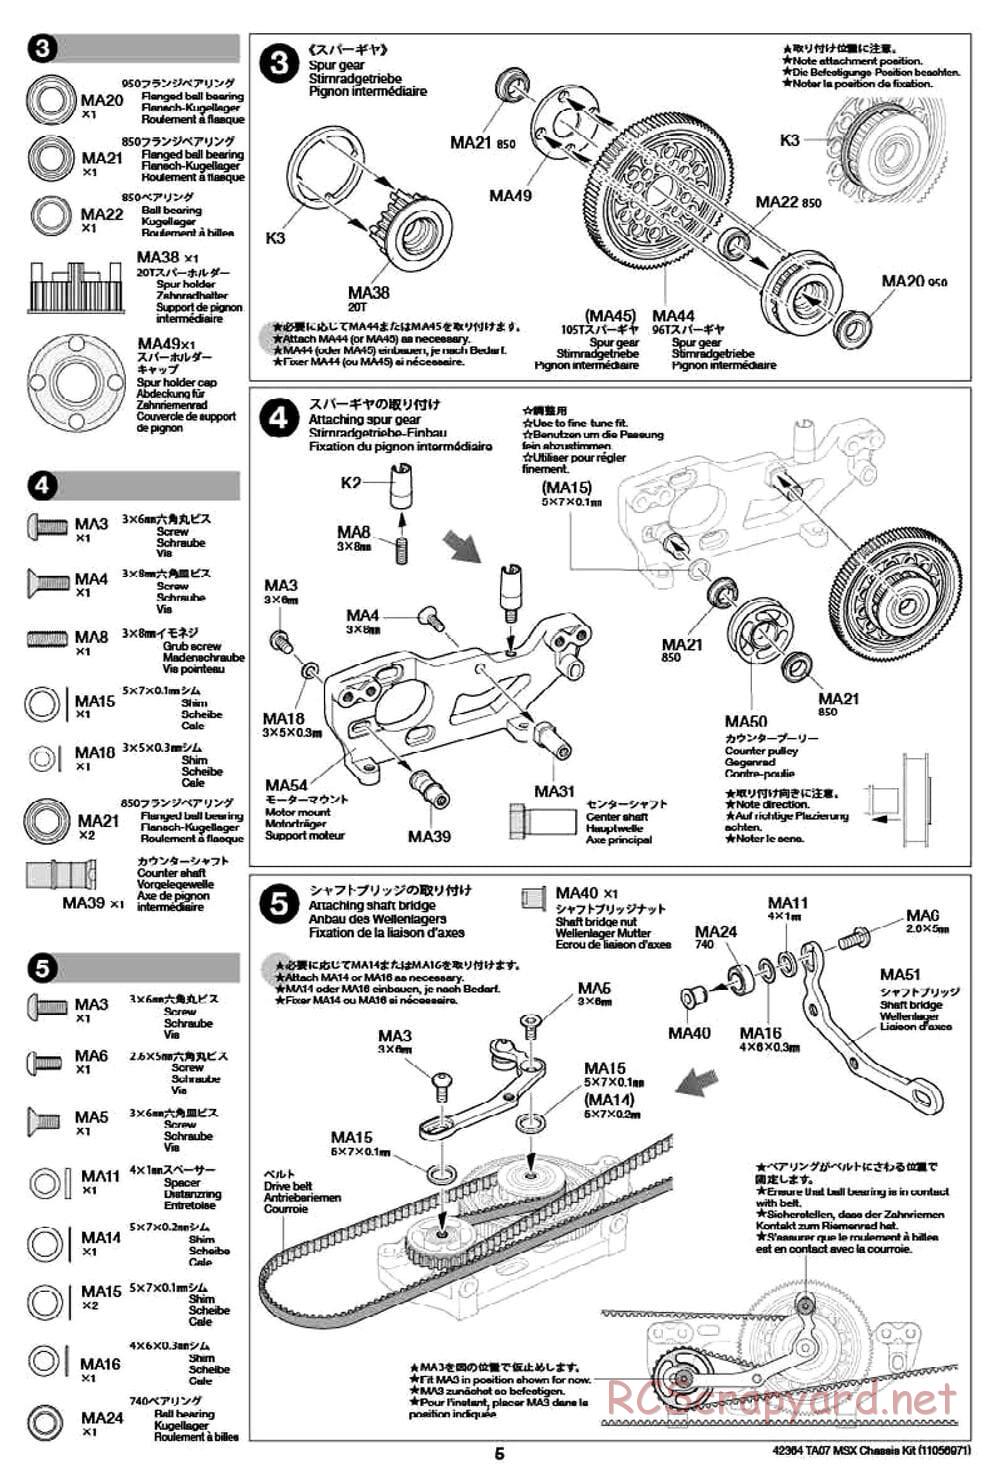 Tamiya - TA07 MSX Chassis - Manual - Page 5